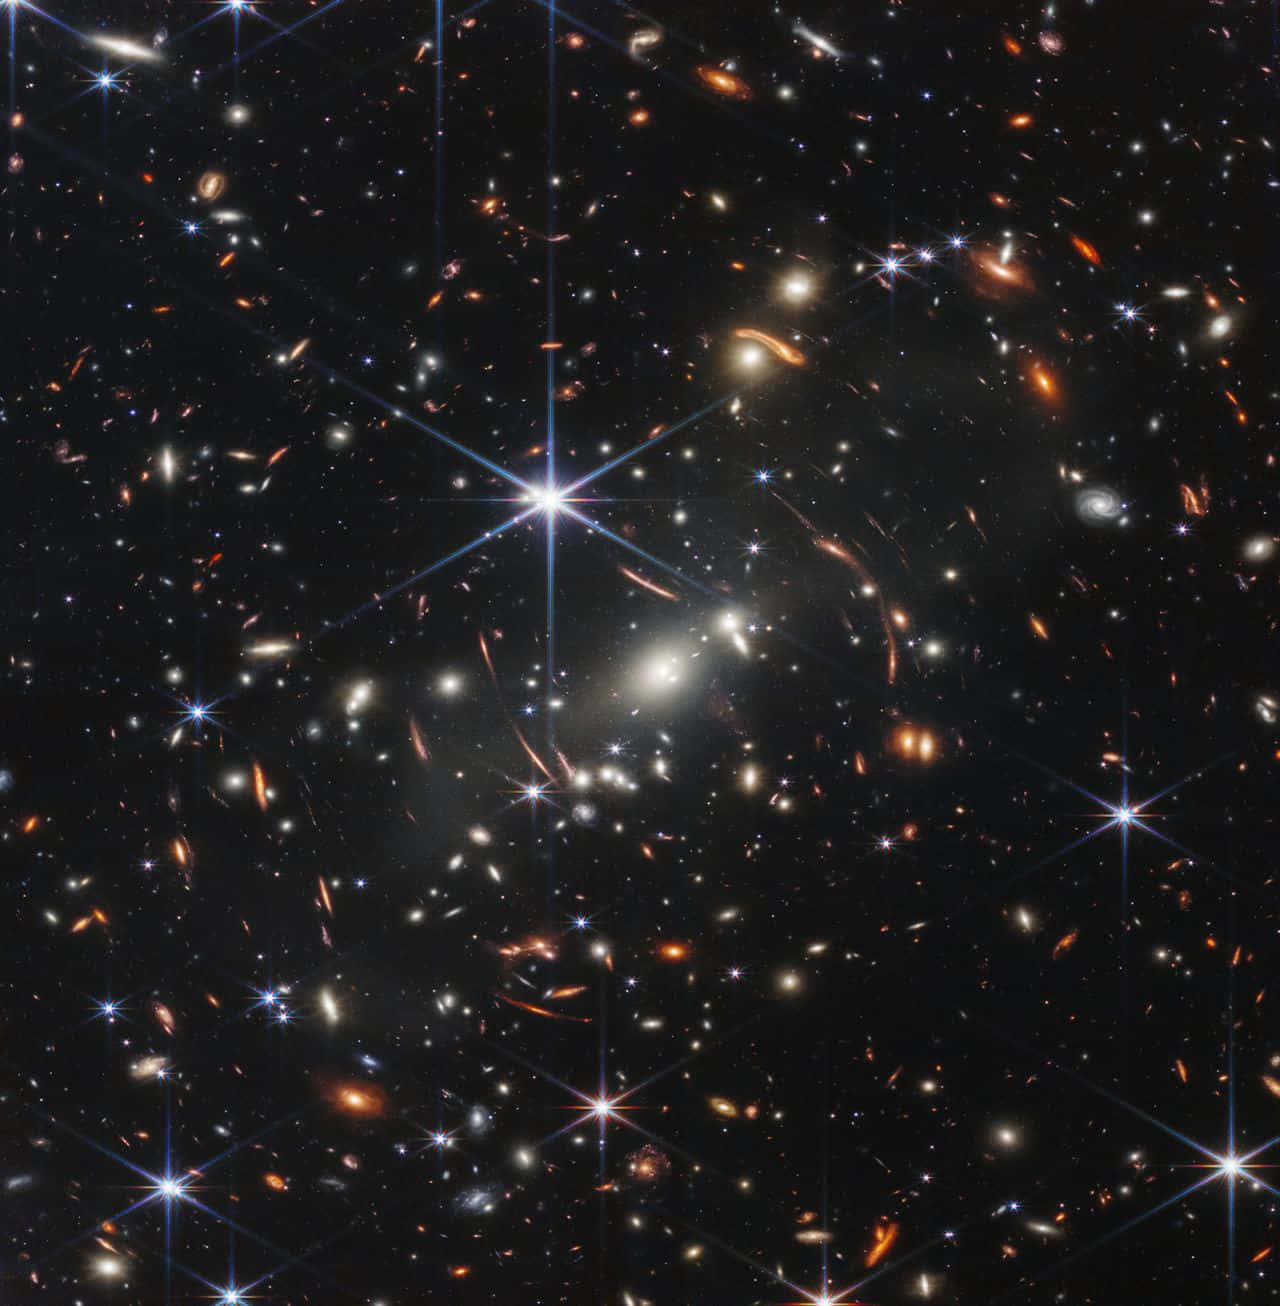 Imagende Un Cúmulo De Galaxias Con Estrellas En El Espacio